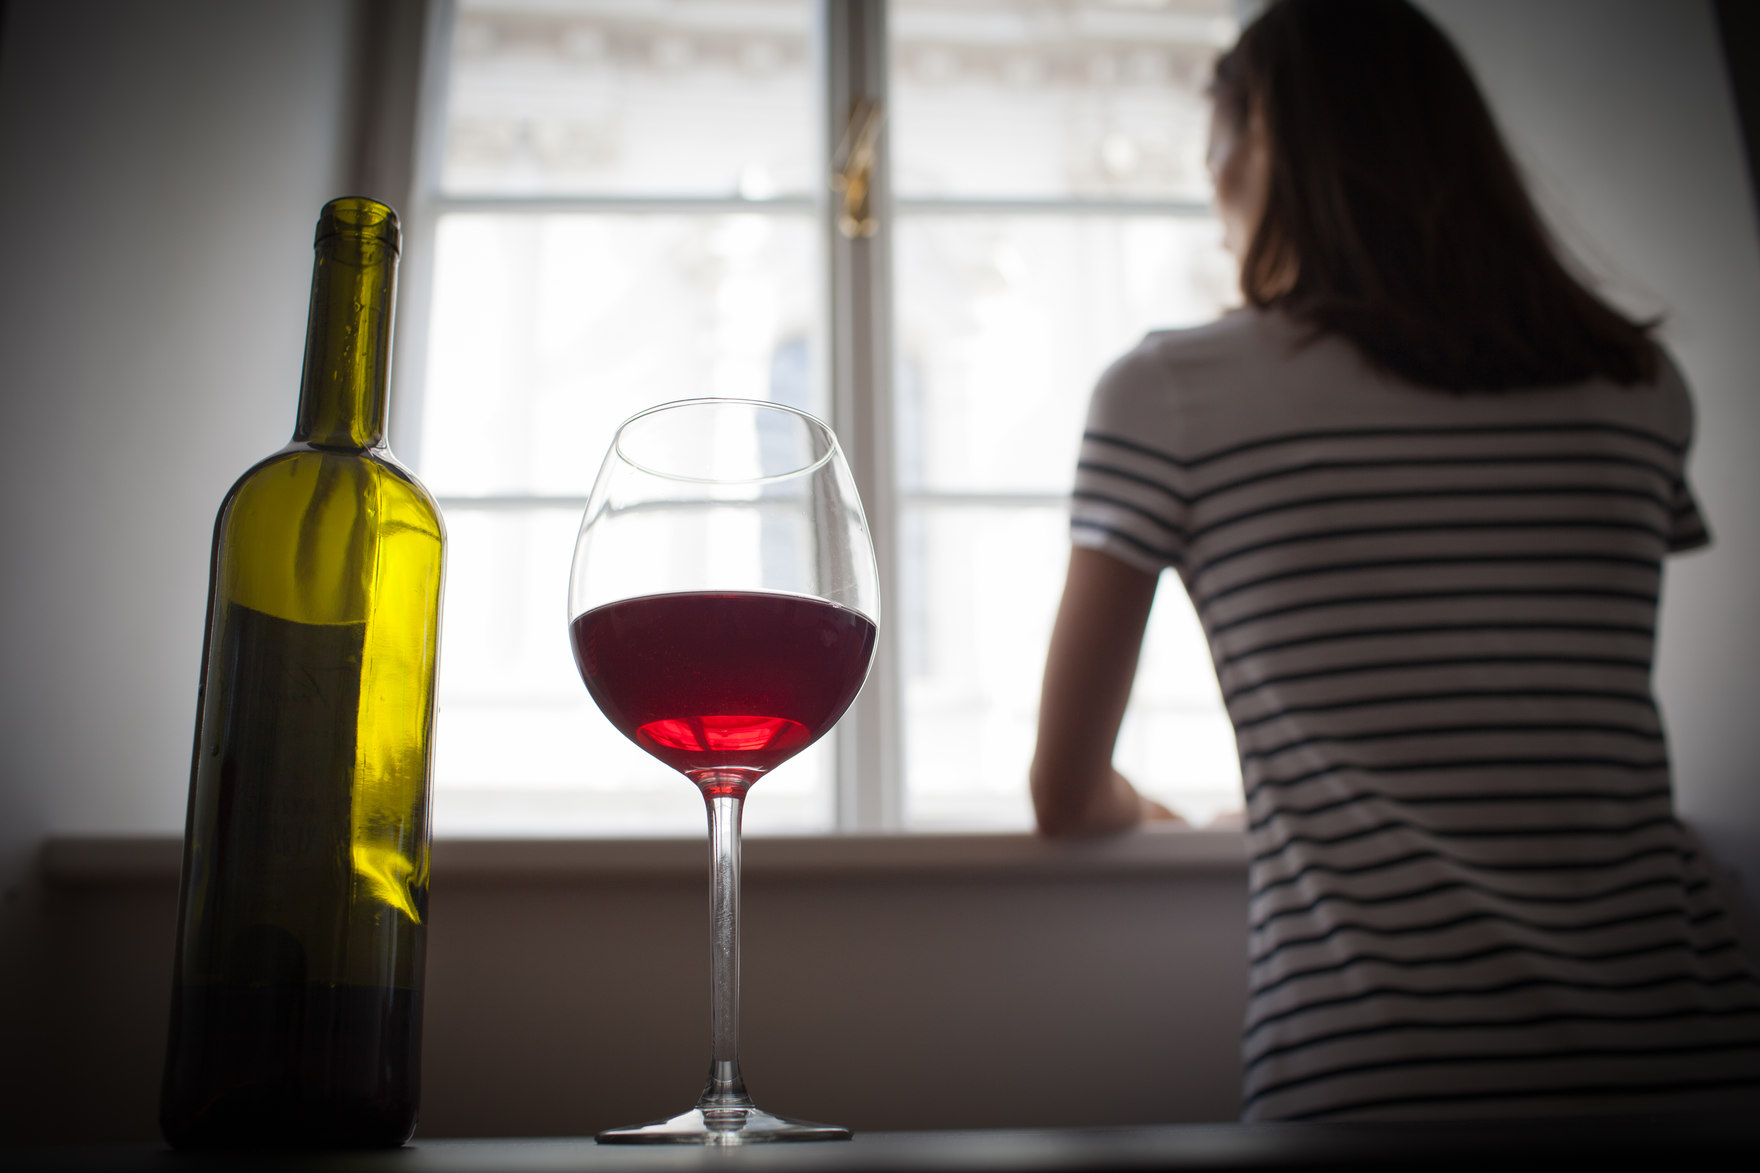 Im Vordergrund ein Weinglas und eine Flaschewein, im Hintergrund eine Frau, die aus dem Fenster schaut